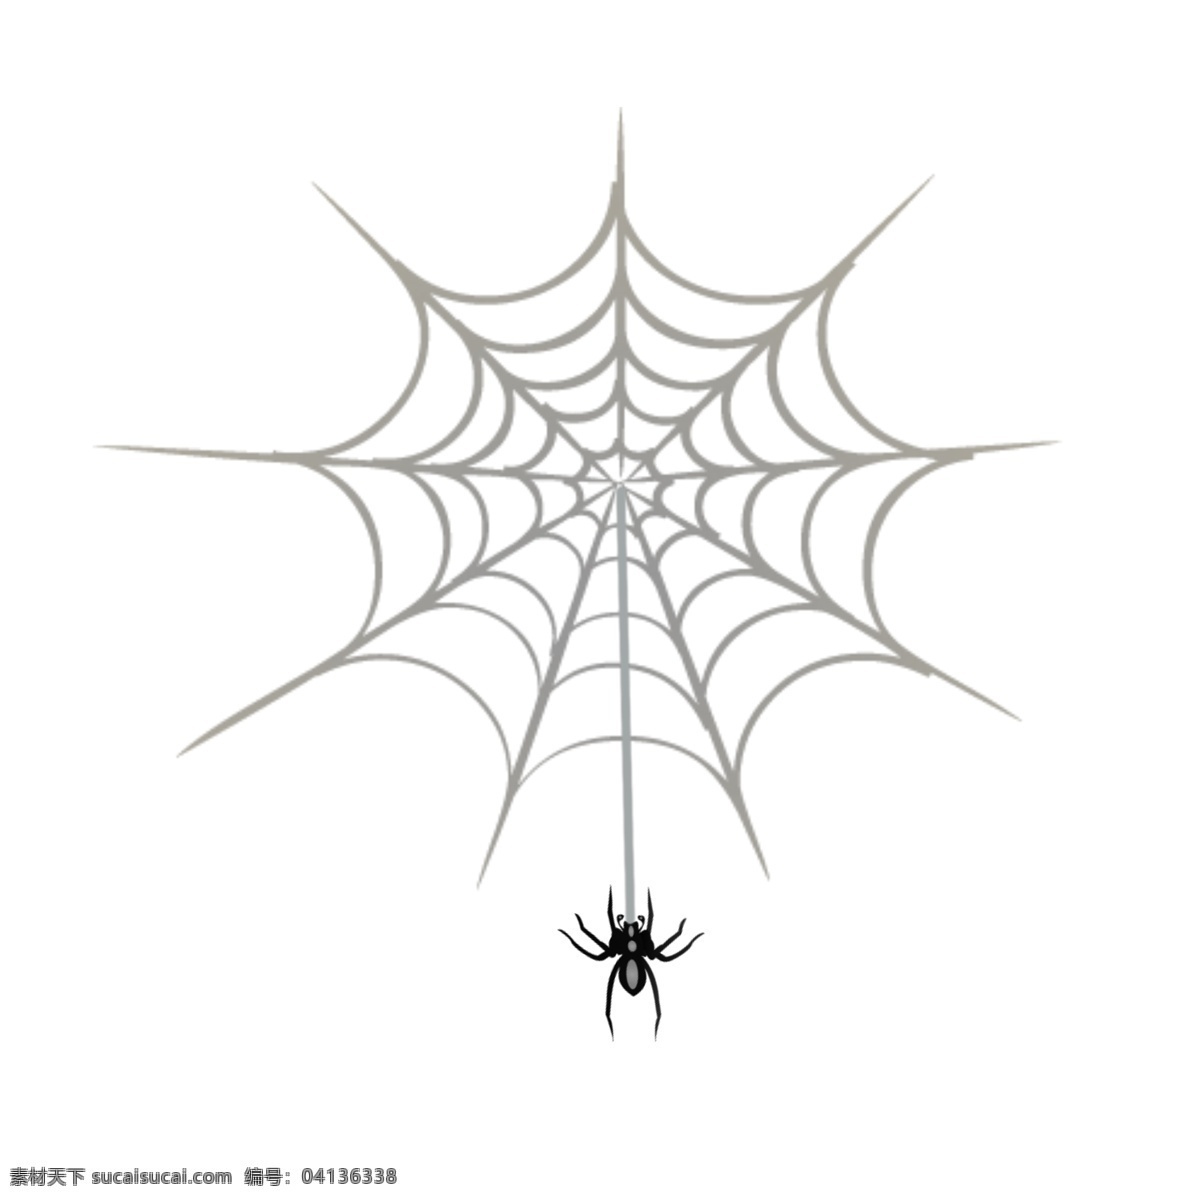 手绘 卡通 蜘蛛网 蜘蛛 简约 万圣节 装饰 元素 装饰元素